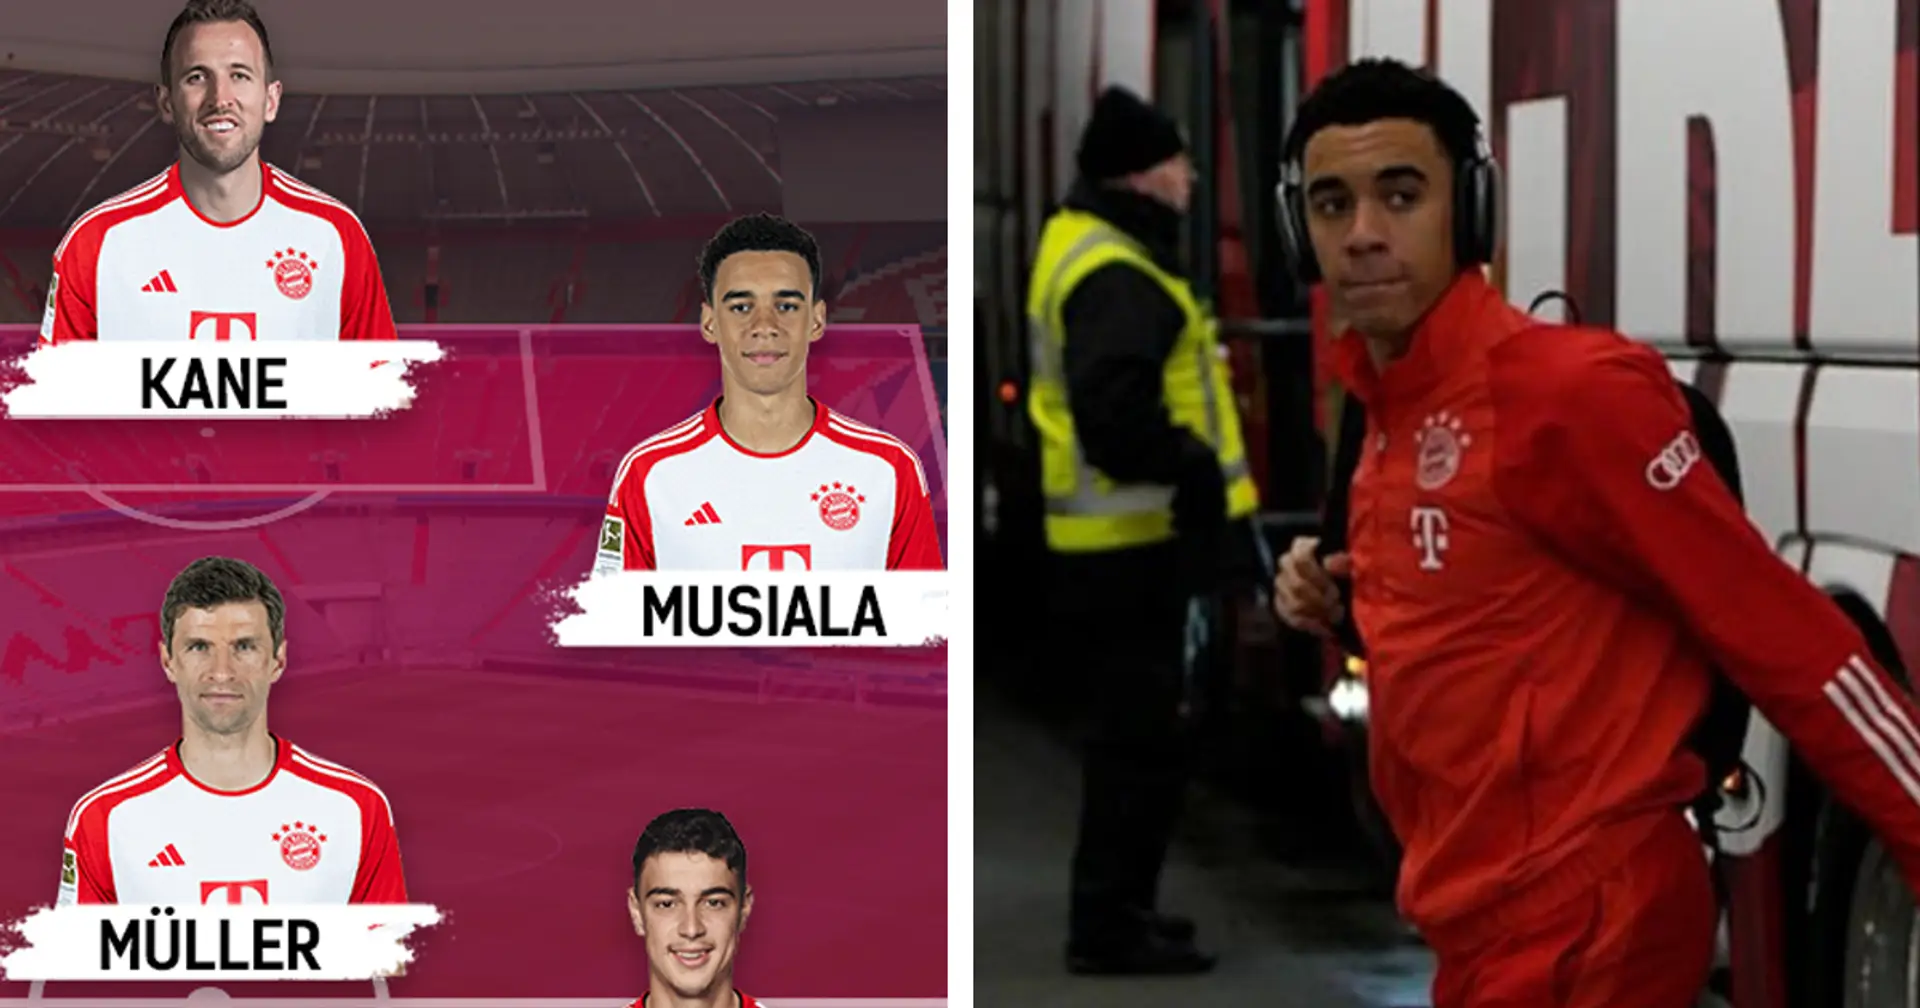 Jamal Musiala ist der jüngste Bayern-Spieler in der Geschichte, der 100 Bundesligaspiele absolviert hat